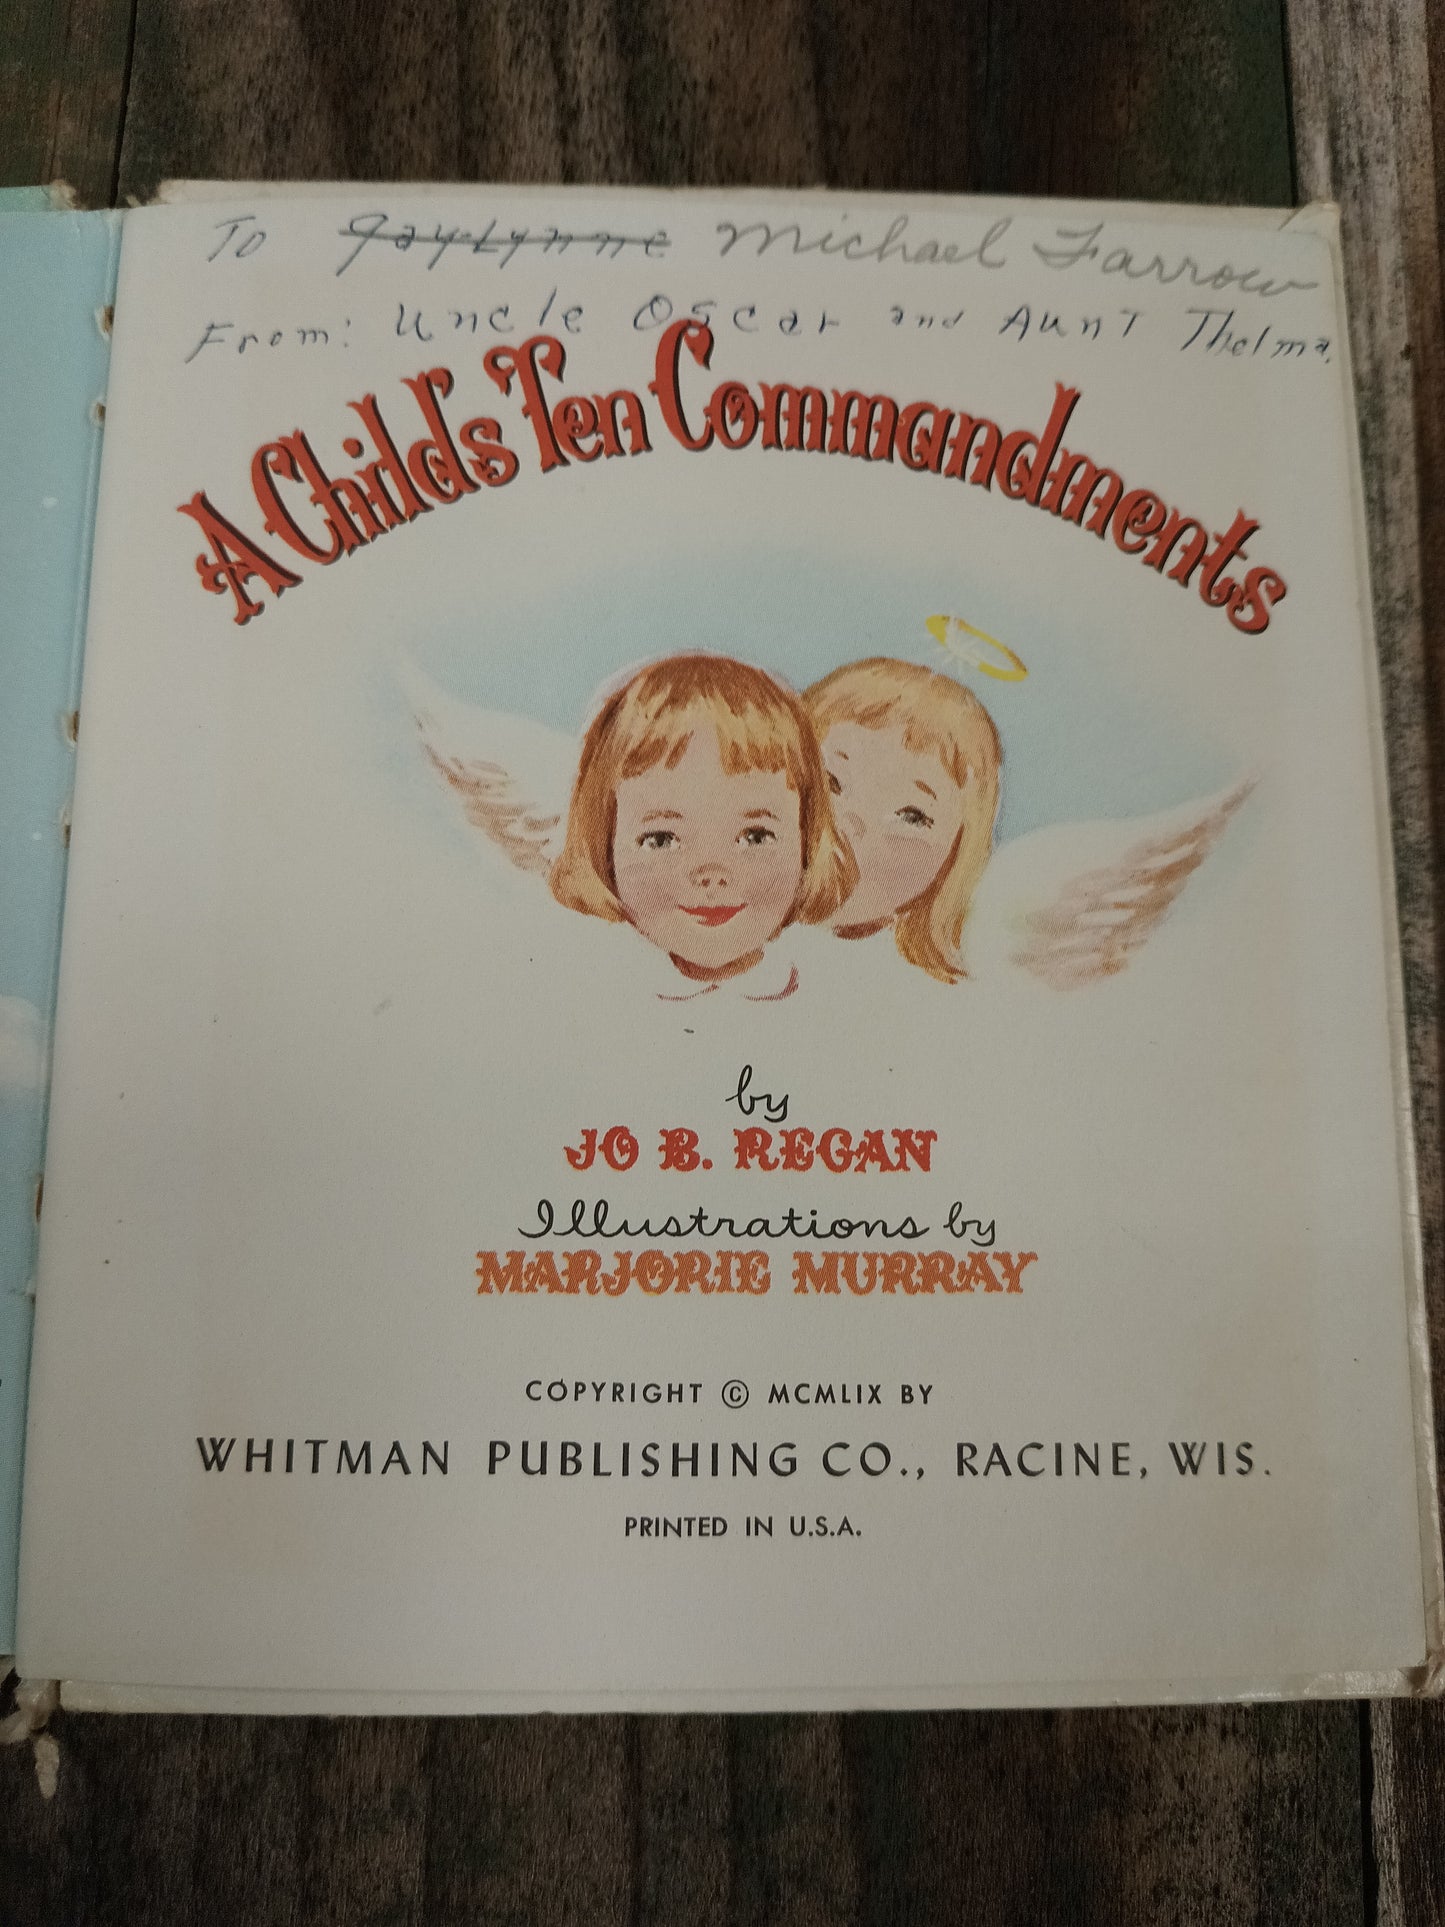 A Child's Ten Commandments